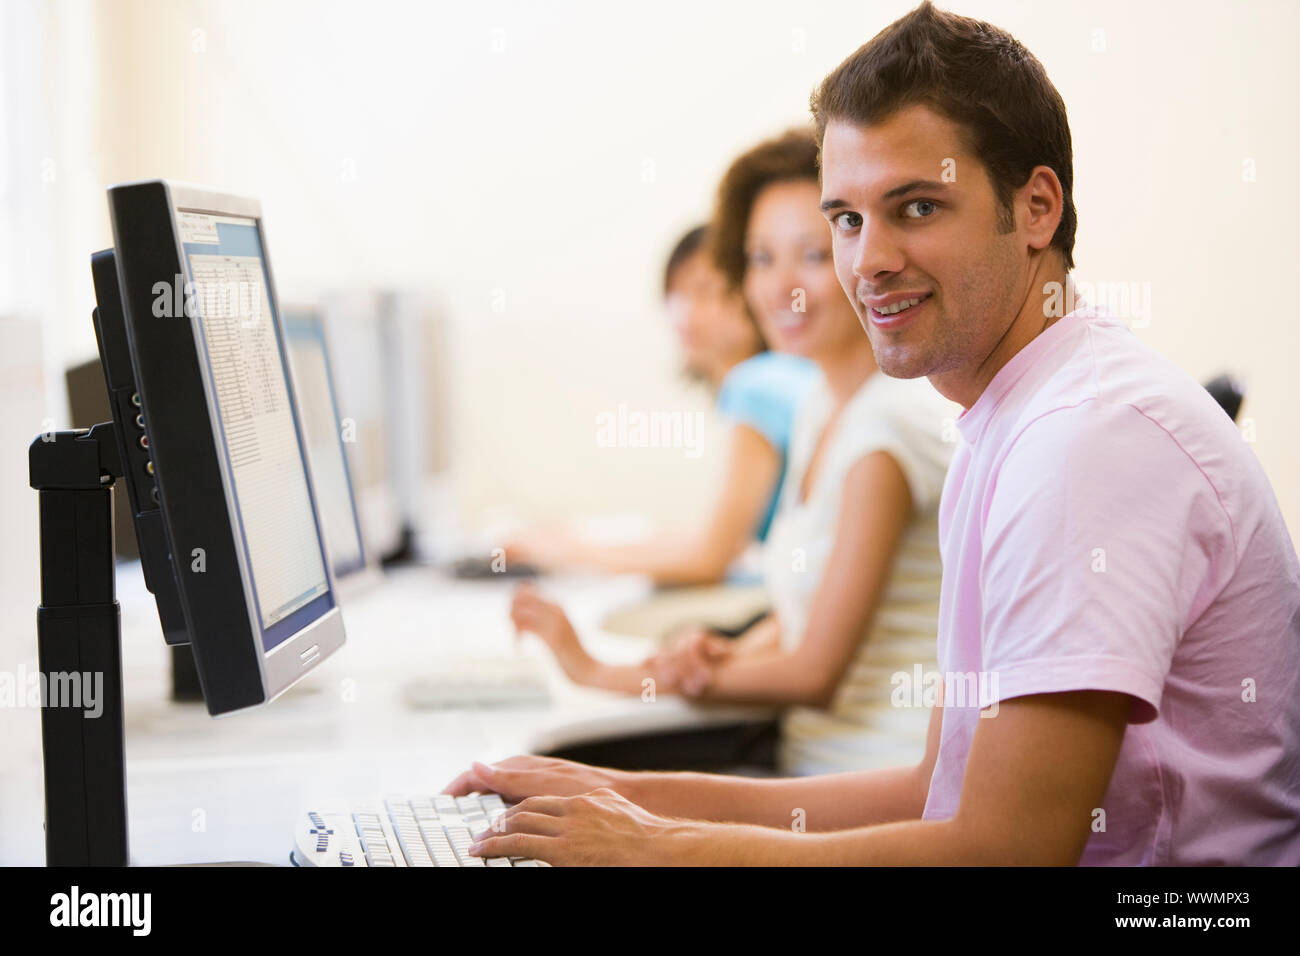 Drei Leute sitzen im Computerraum Typisierung und lächelnd Stockfoto